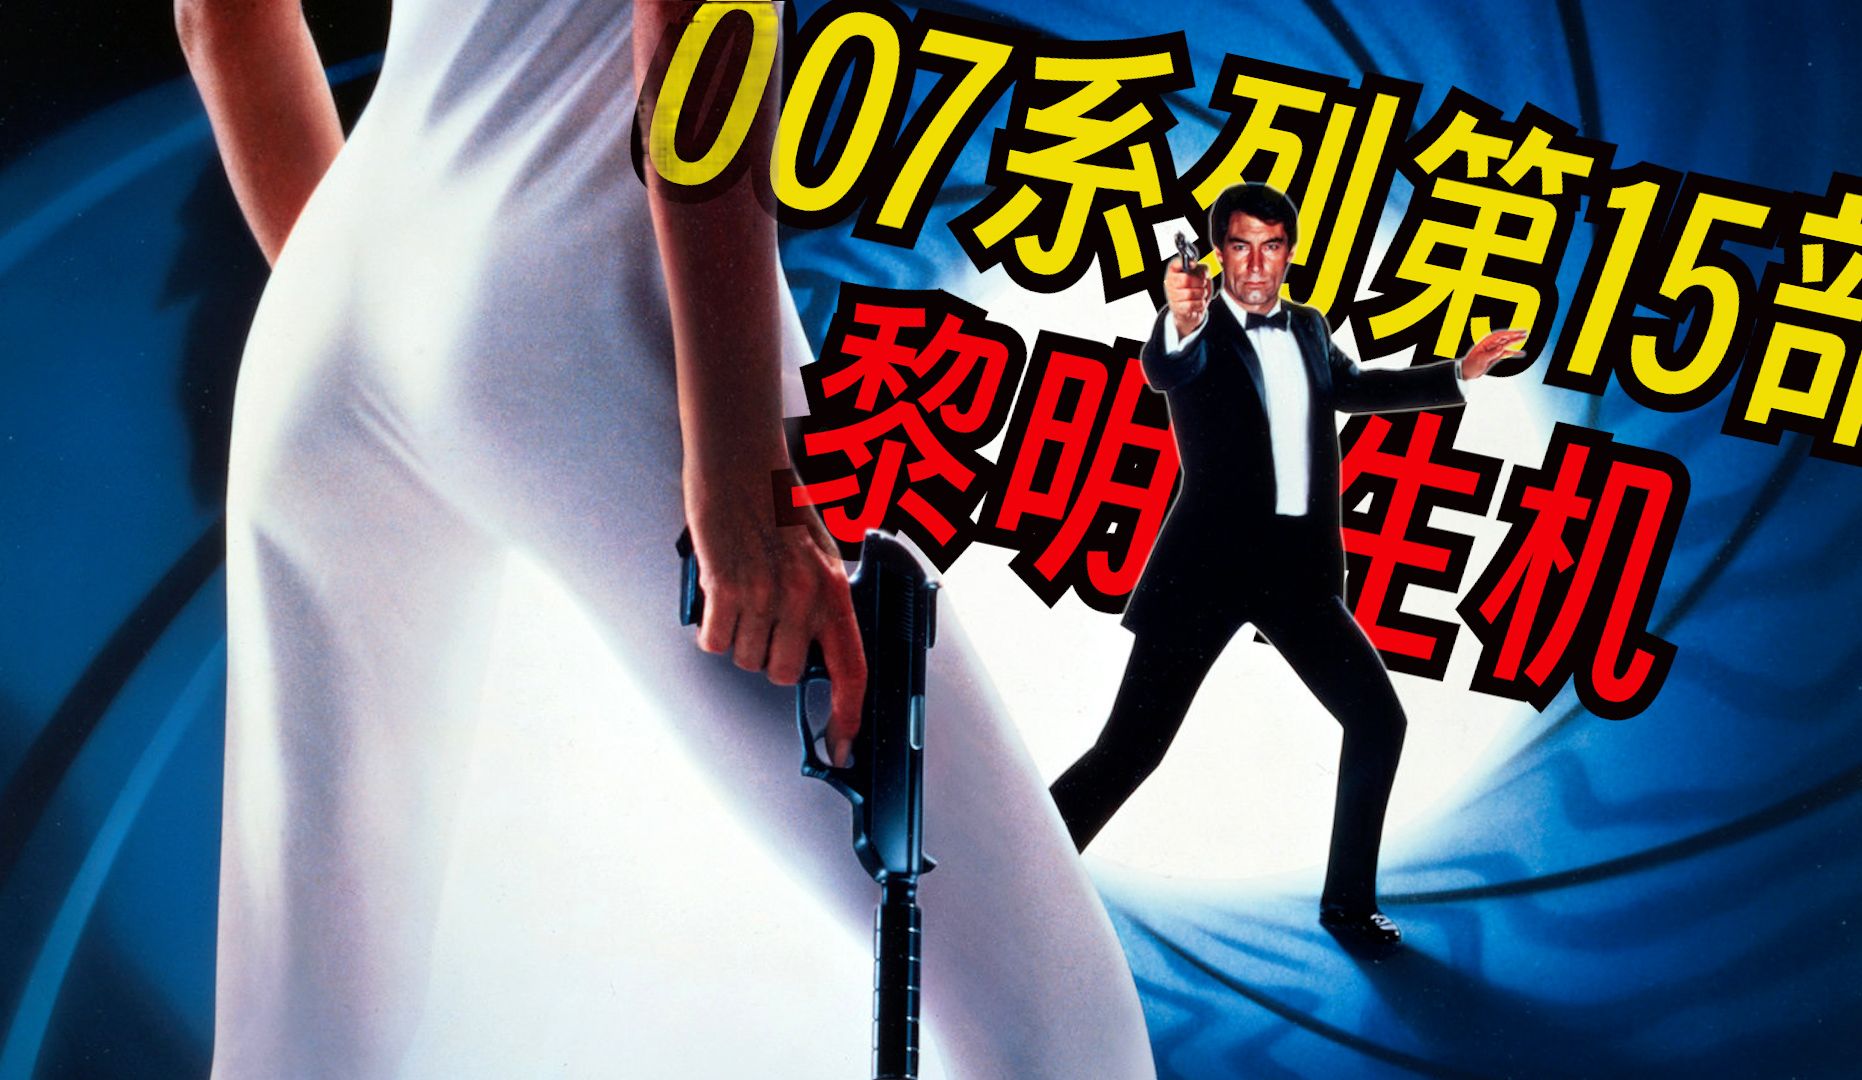 《007系列电影》第15部之黎明生机